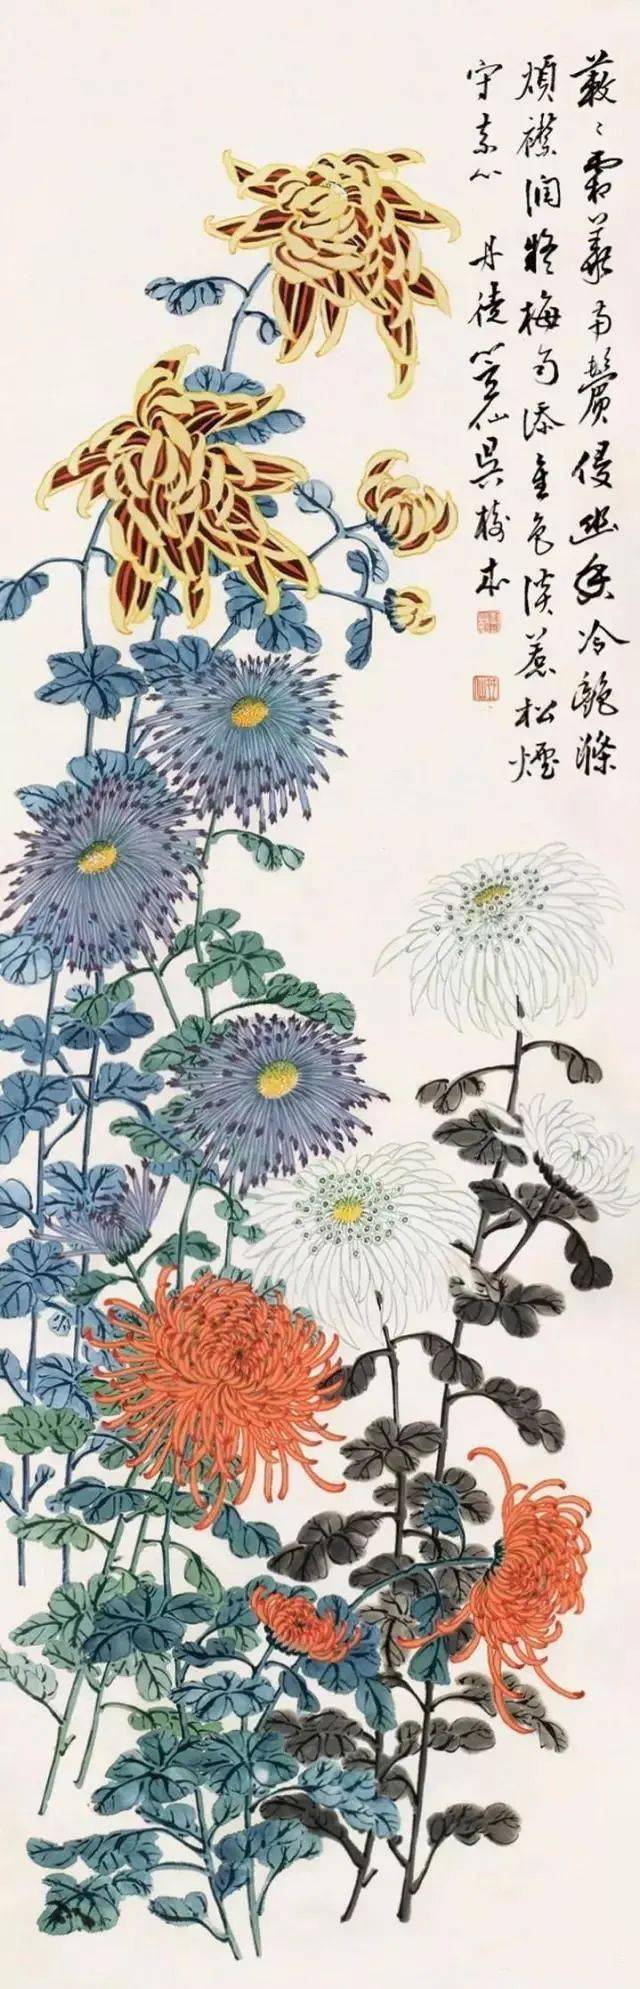 吴树本菊花作品他晚年居上海,与王一亭交情甚好,常在一起吟诗绘画